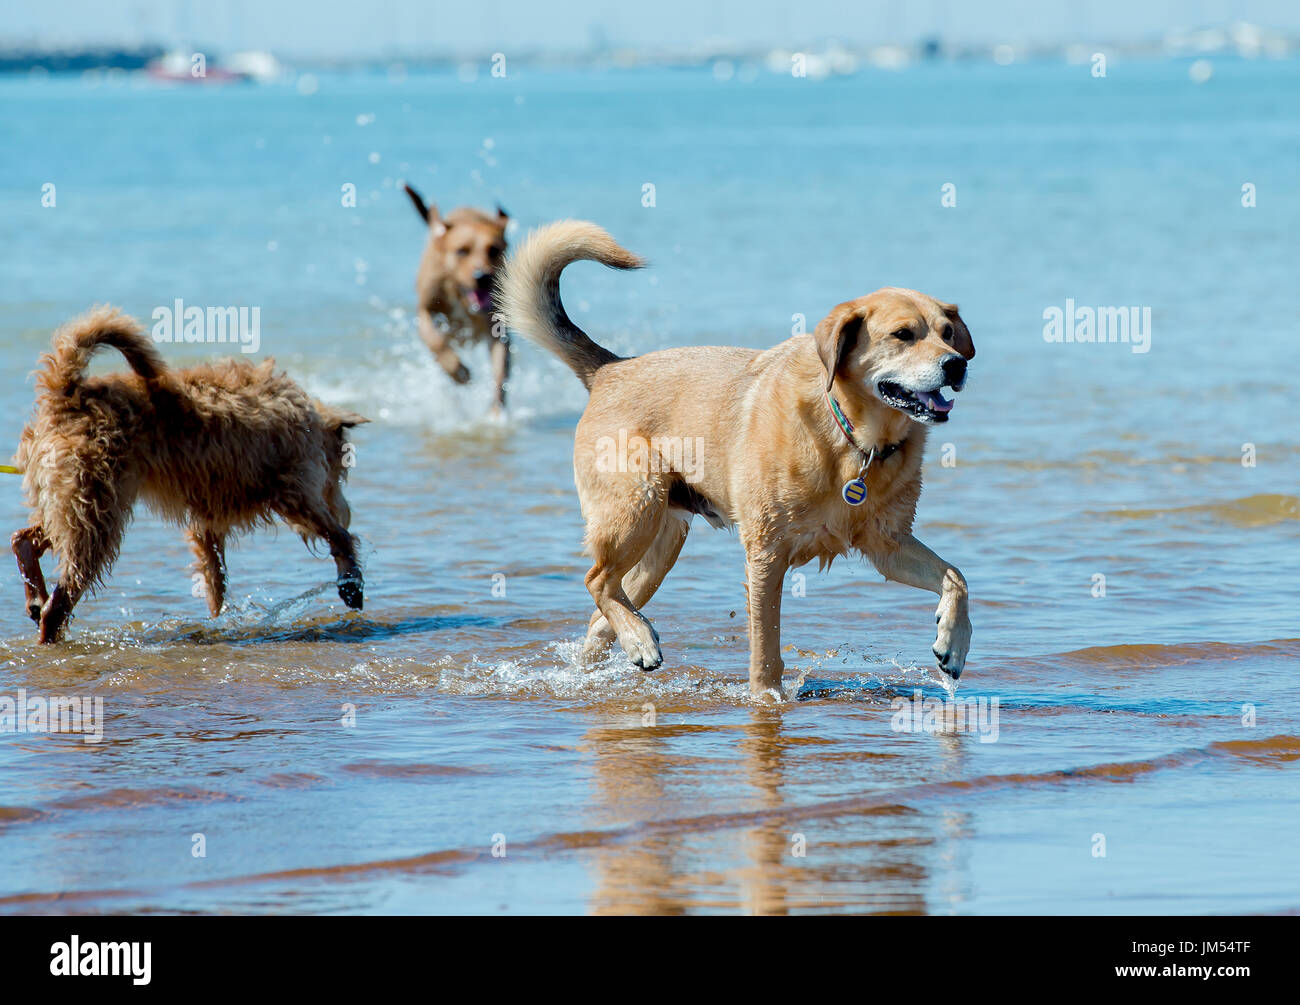 Les chiens heureux de jouer gratuitement en cours d'exécution qui s'ébattent sur la plage en eau peu profonde Provincetown, MA Banque D'Images